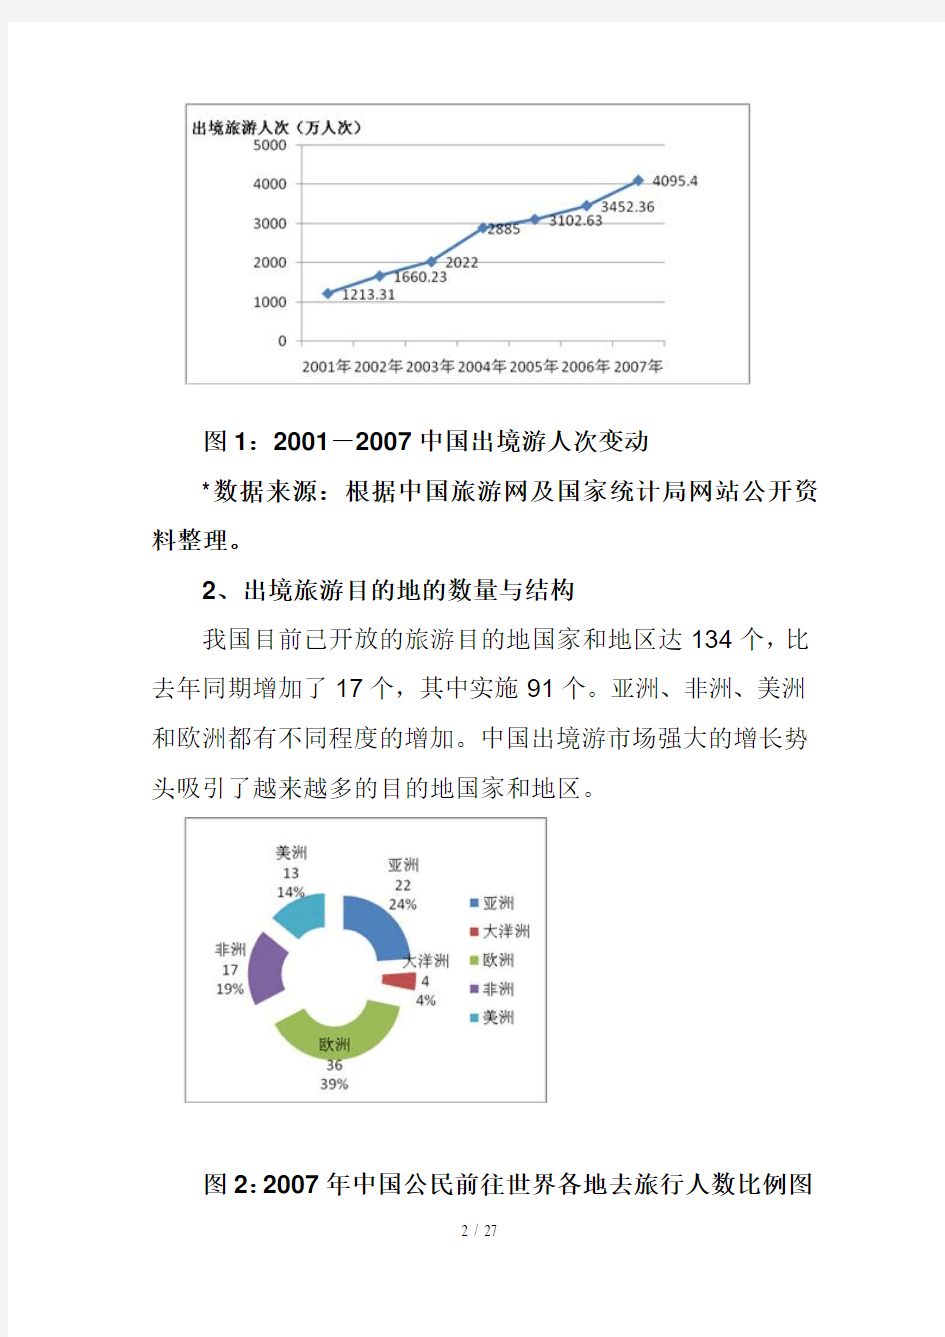 中国出境旅游的市场发展趋势